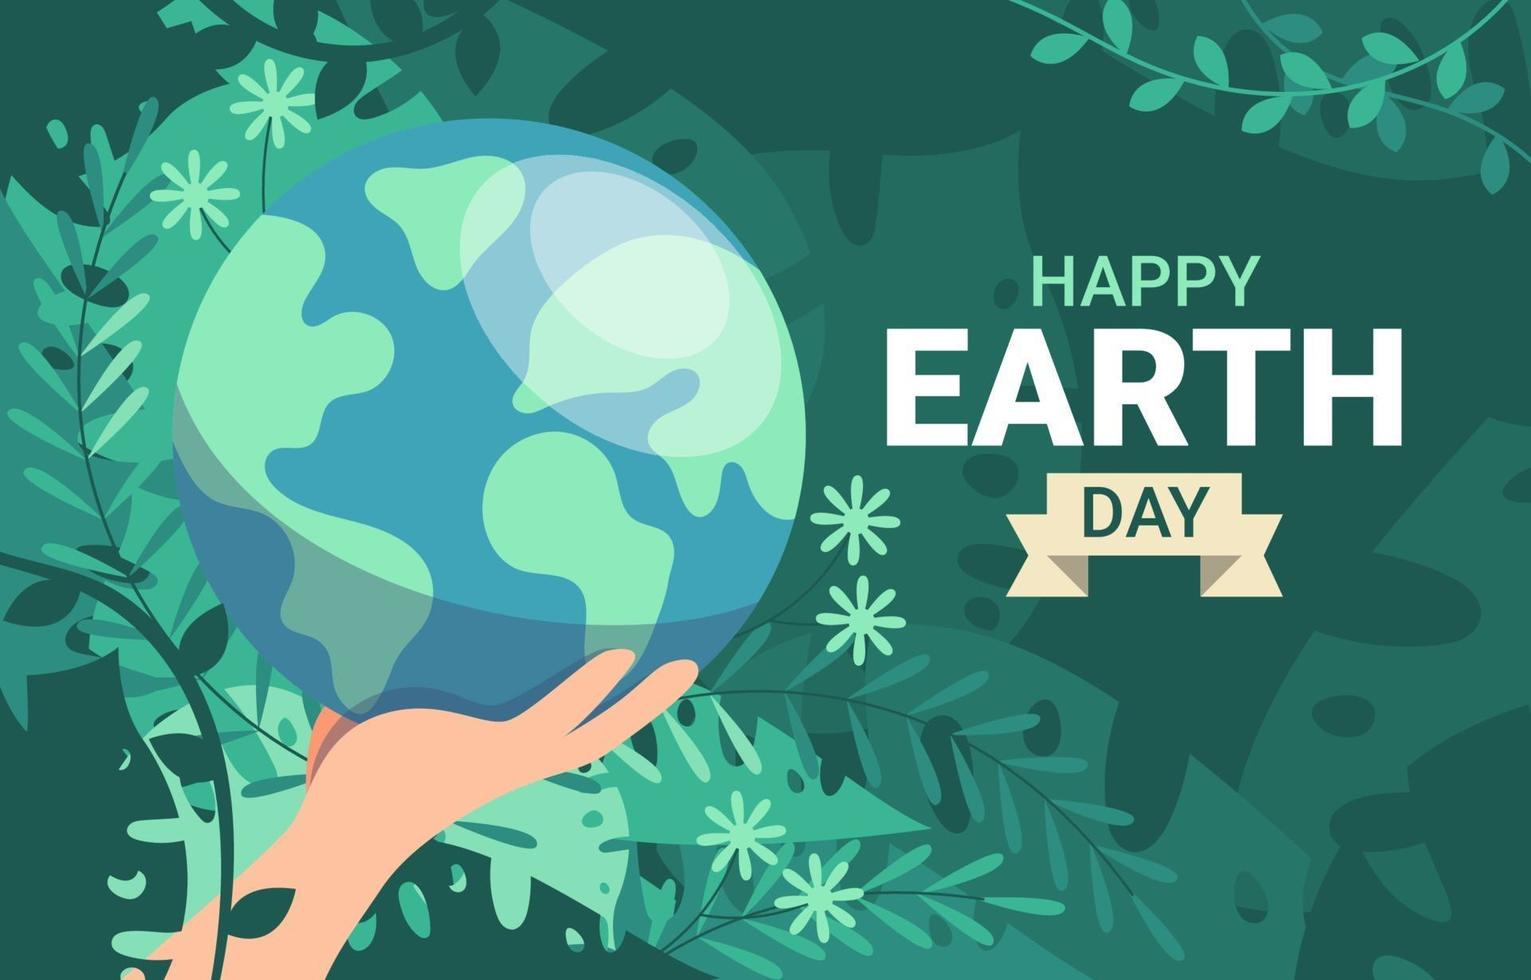 Happy Earth Day Design vector